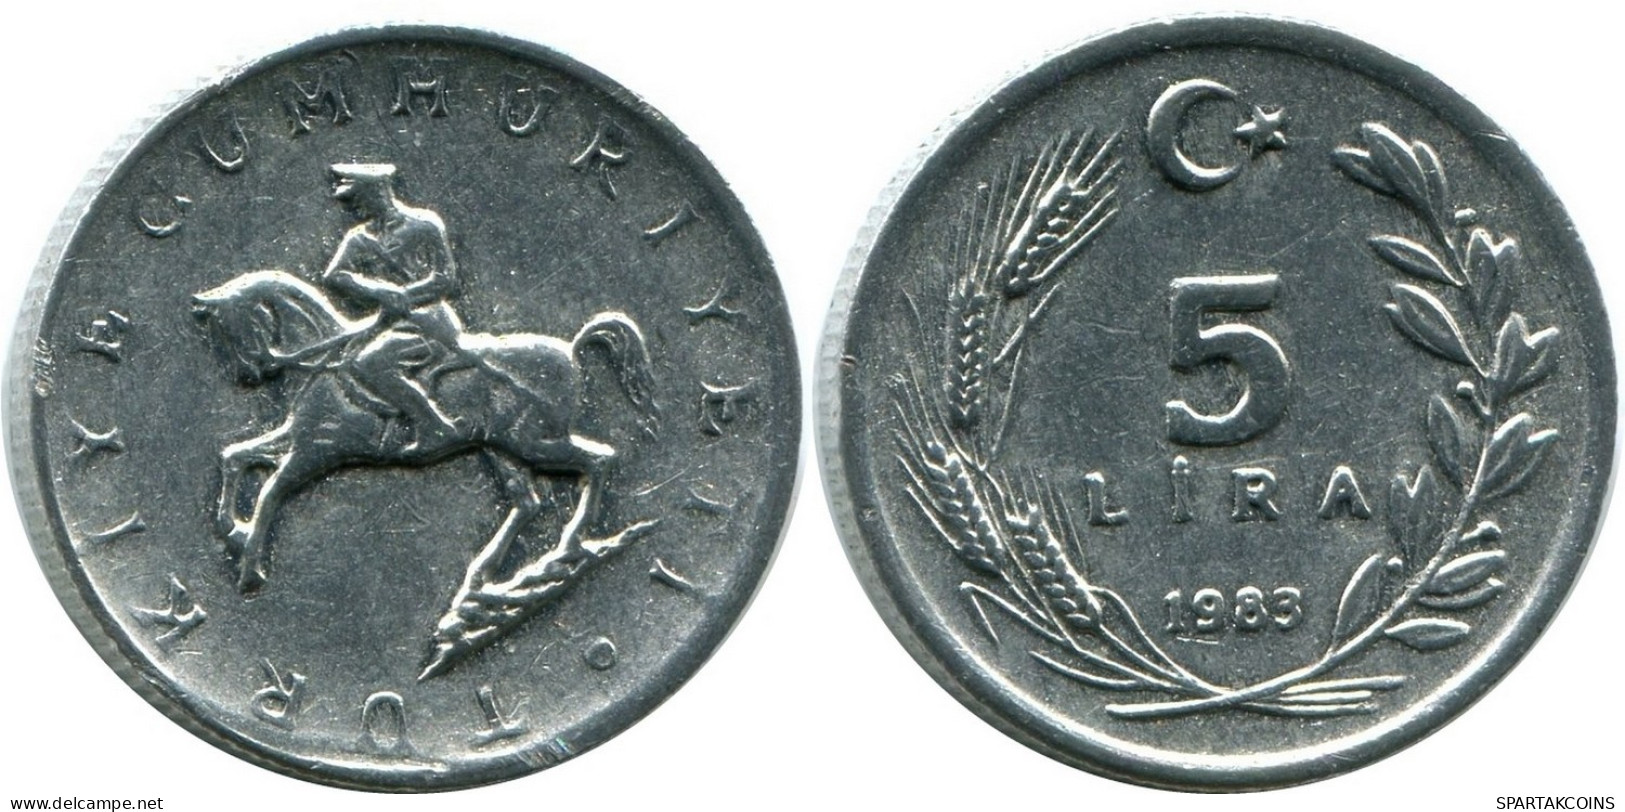 5 LIRA 1983 TURKEY UNC Coin #M10309.U.A - Turkije